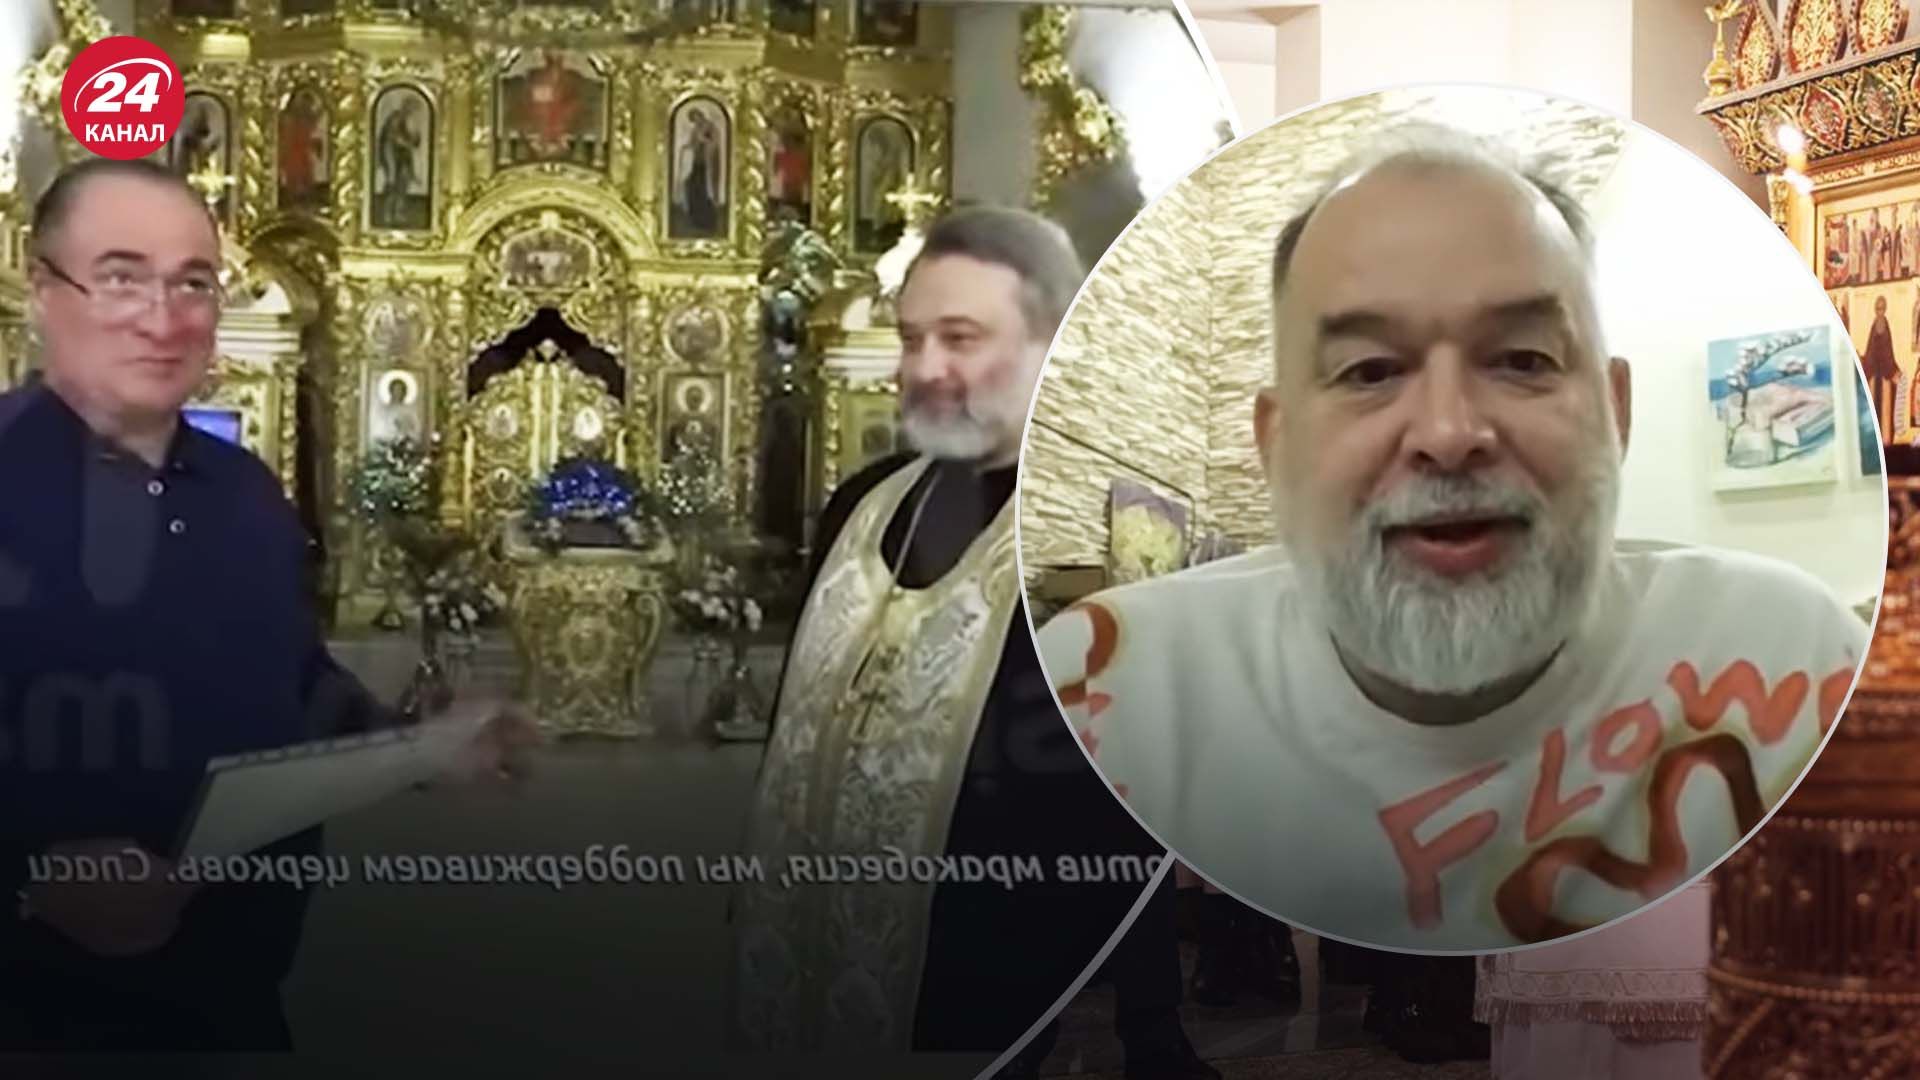 Московский предприниматель якобы передал РПЦ мощи Святого Николая - почему это ложь - 24 Канал